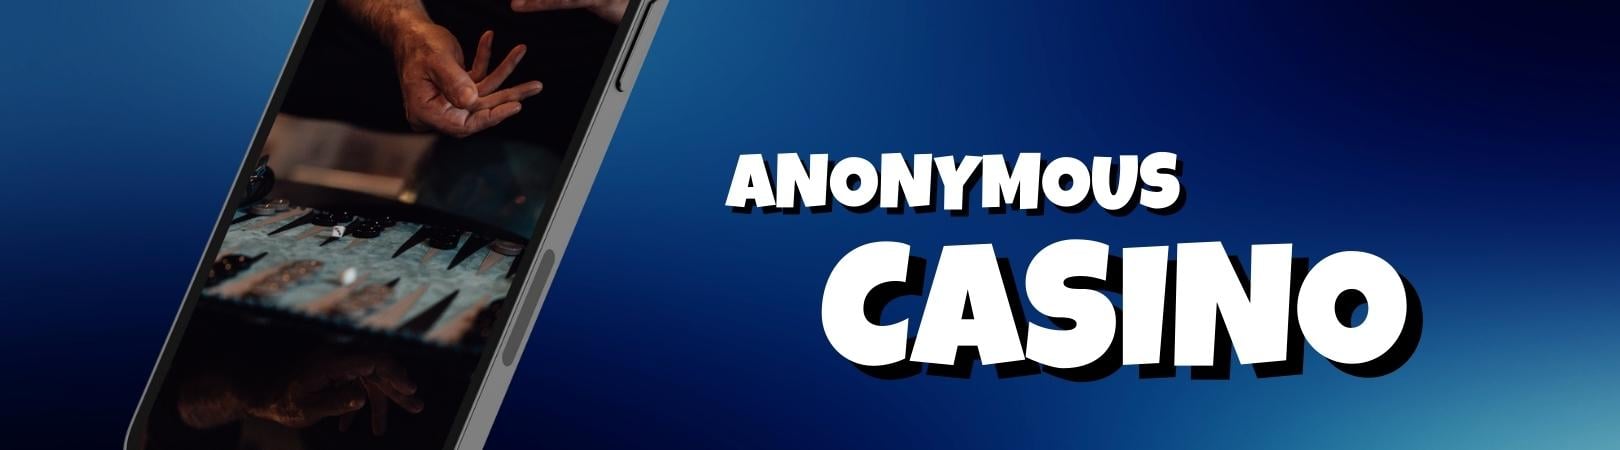 Anonymous casino img